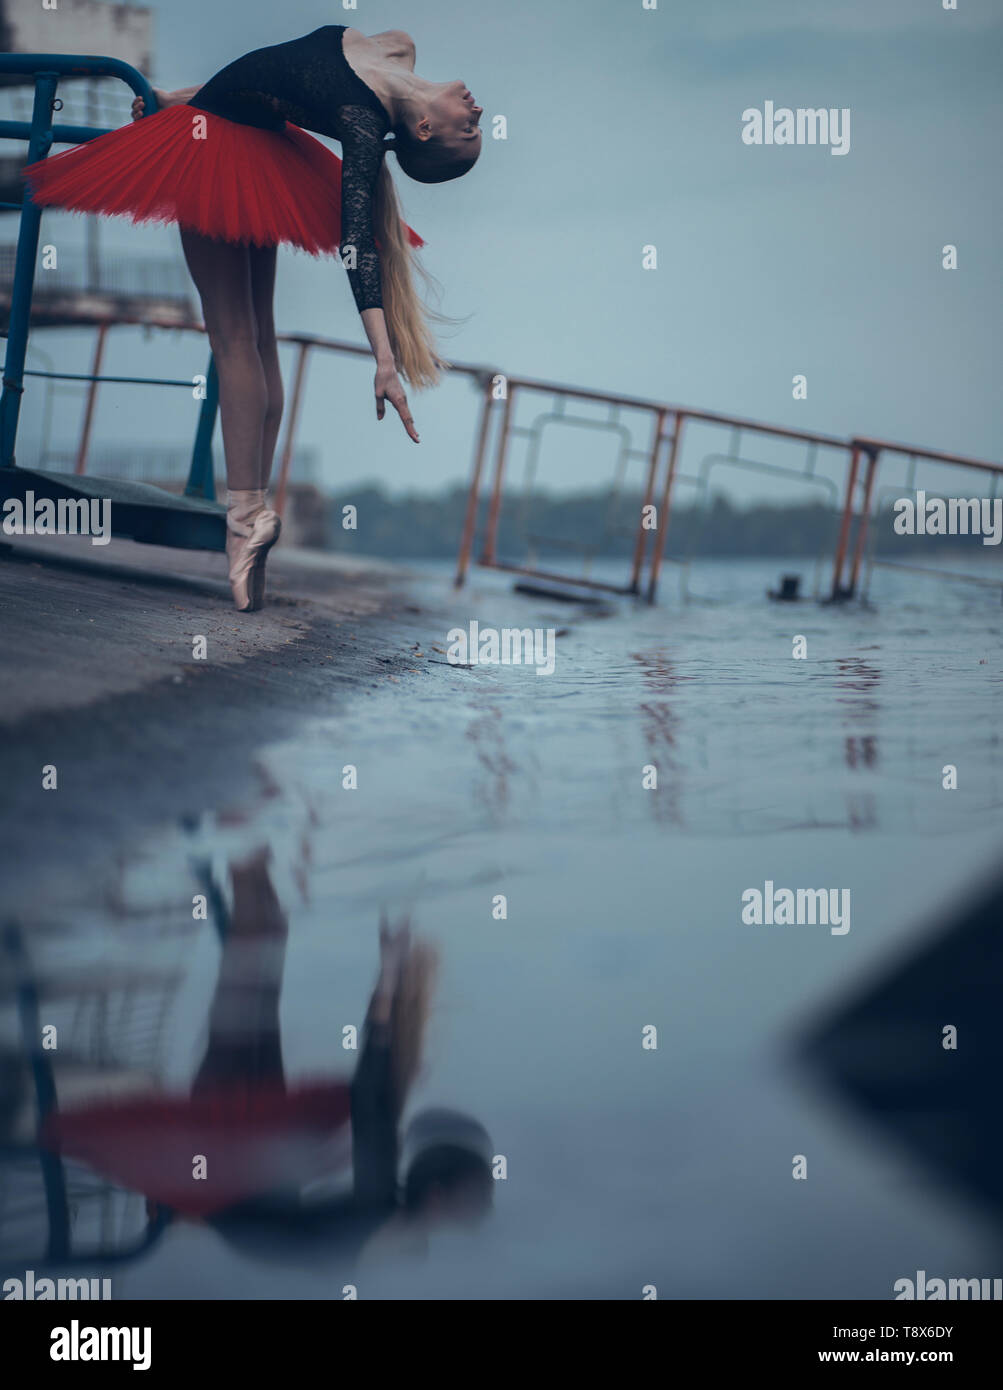 Ballerine danse sur la côte du fleuve dans un tutu noir et rouge et son reflet dans l'eau. Banque D'Images